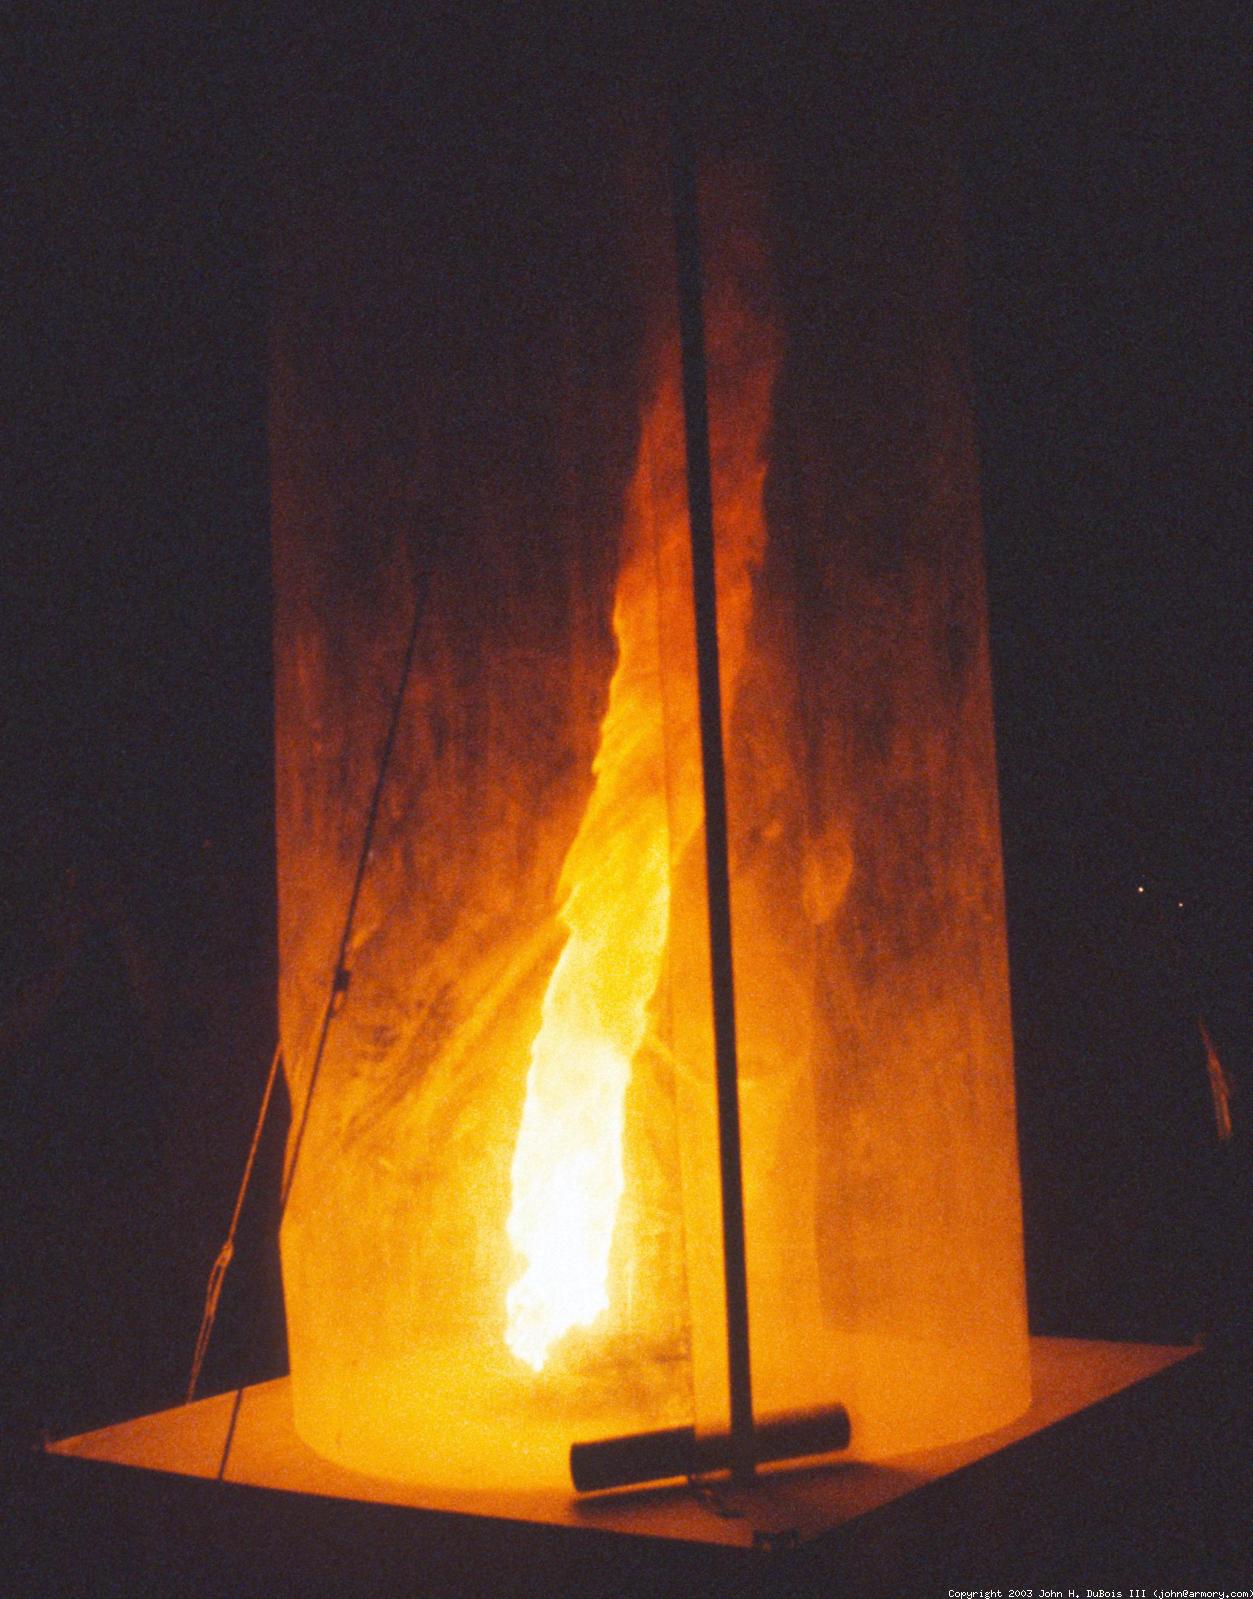 Fire Vortex Cylinder